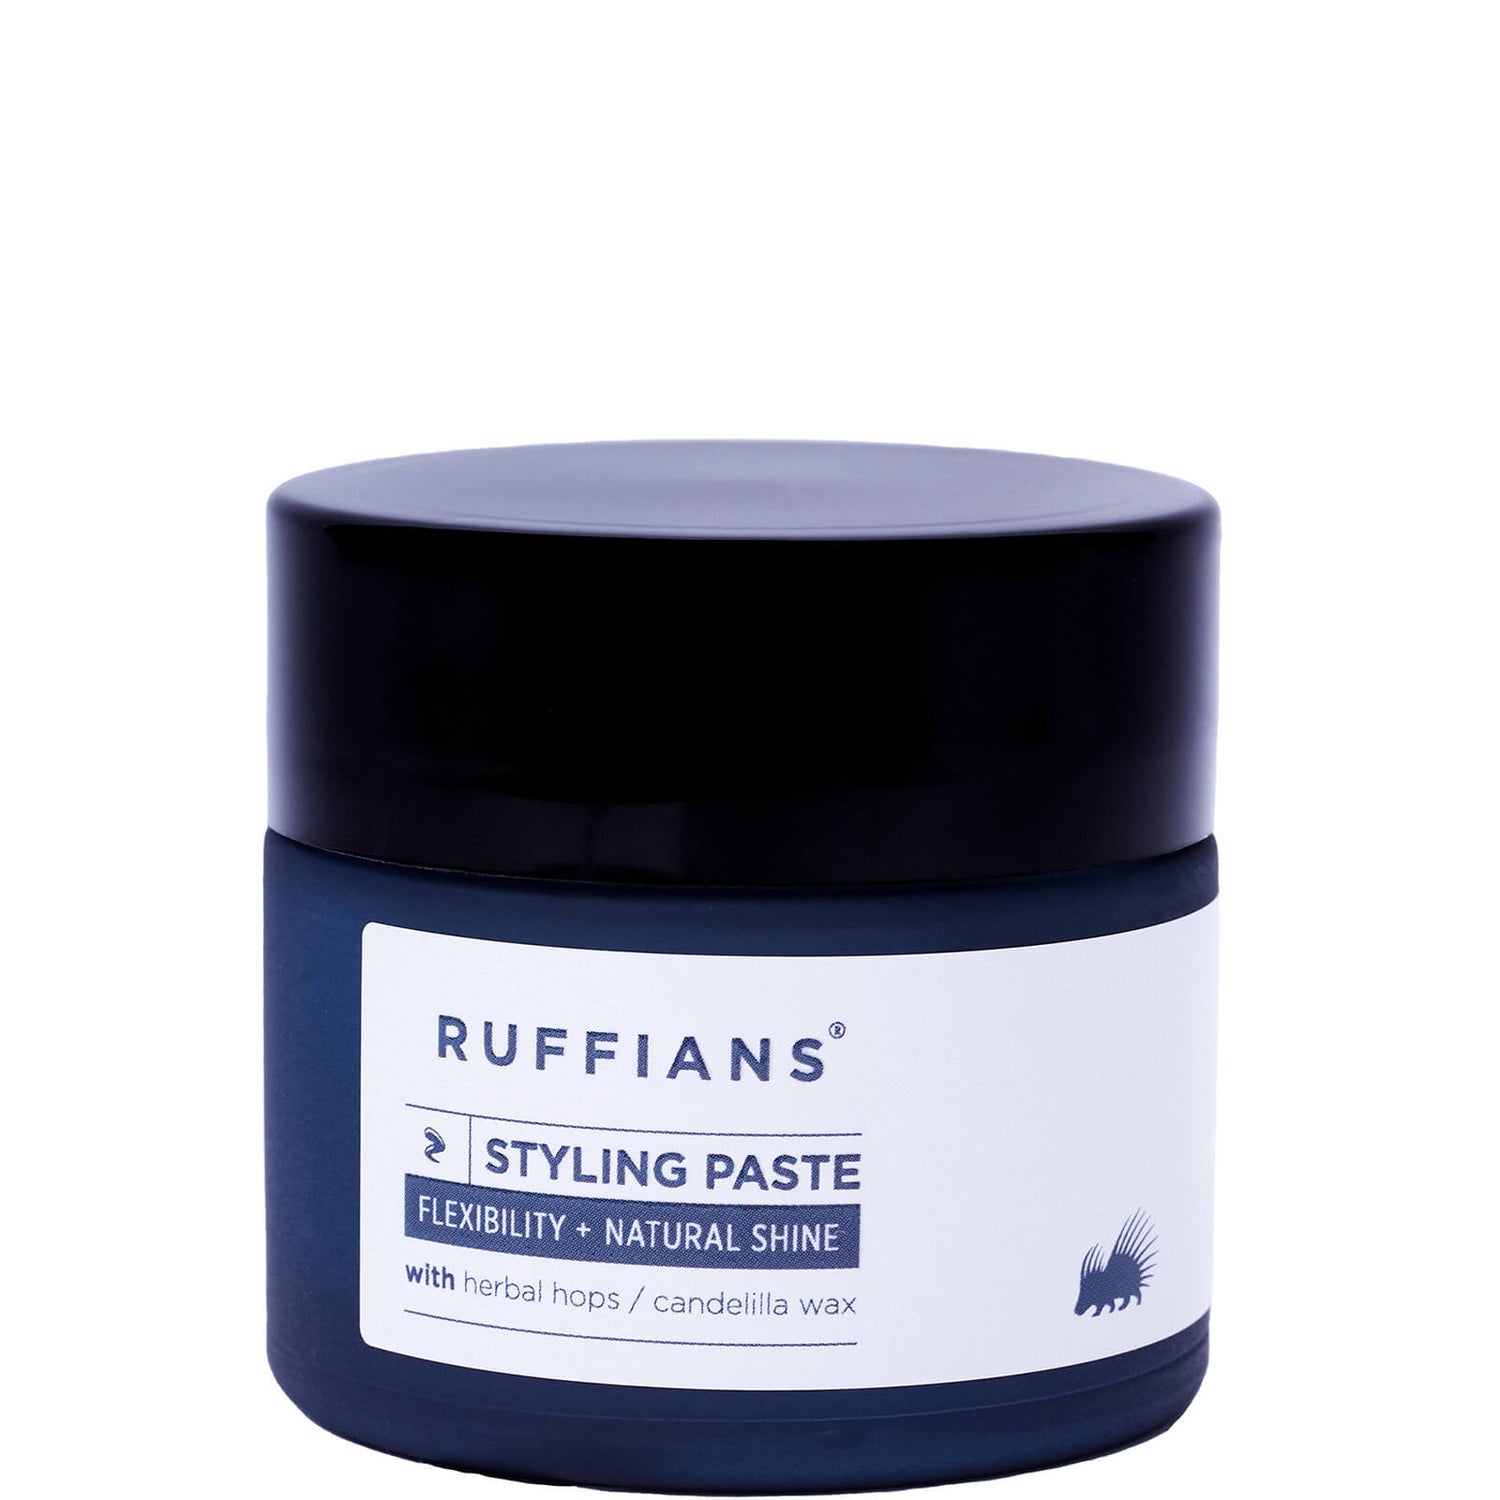 Ruffians Styling Paste